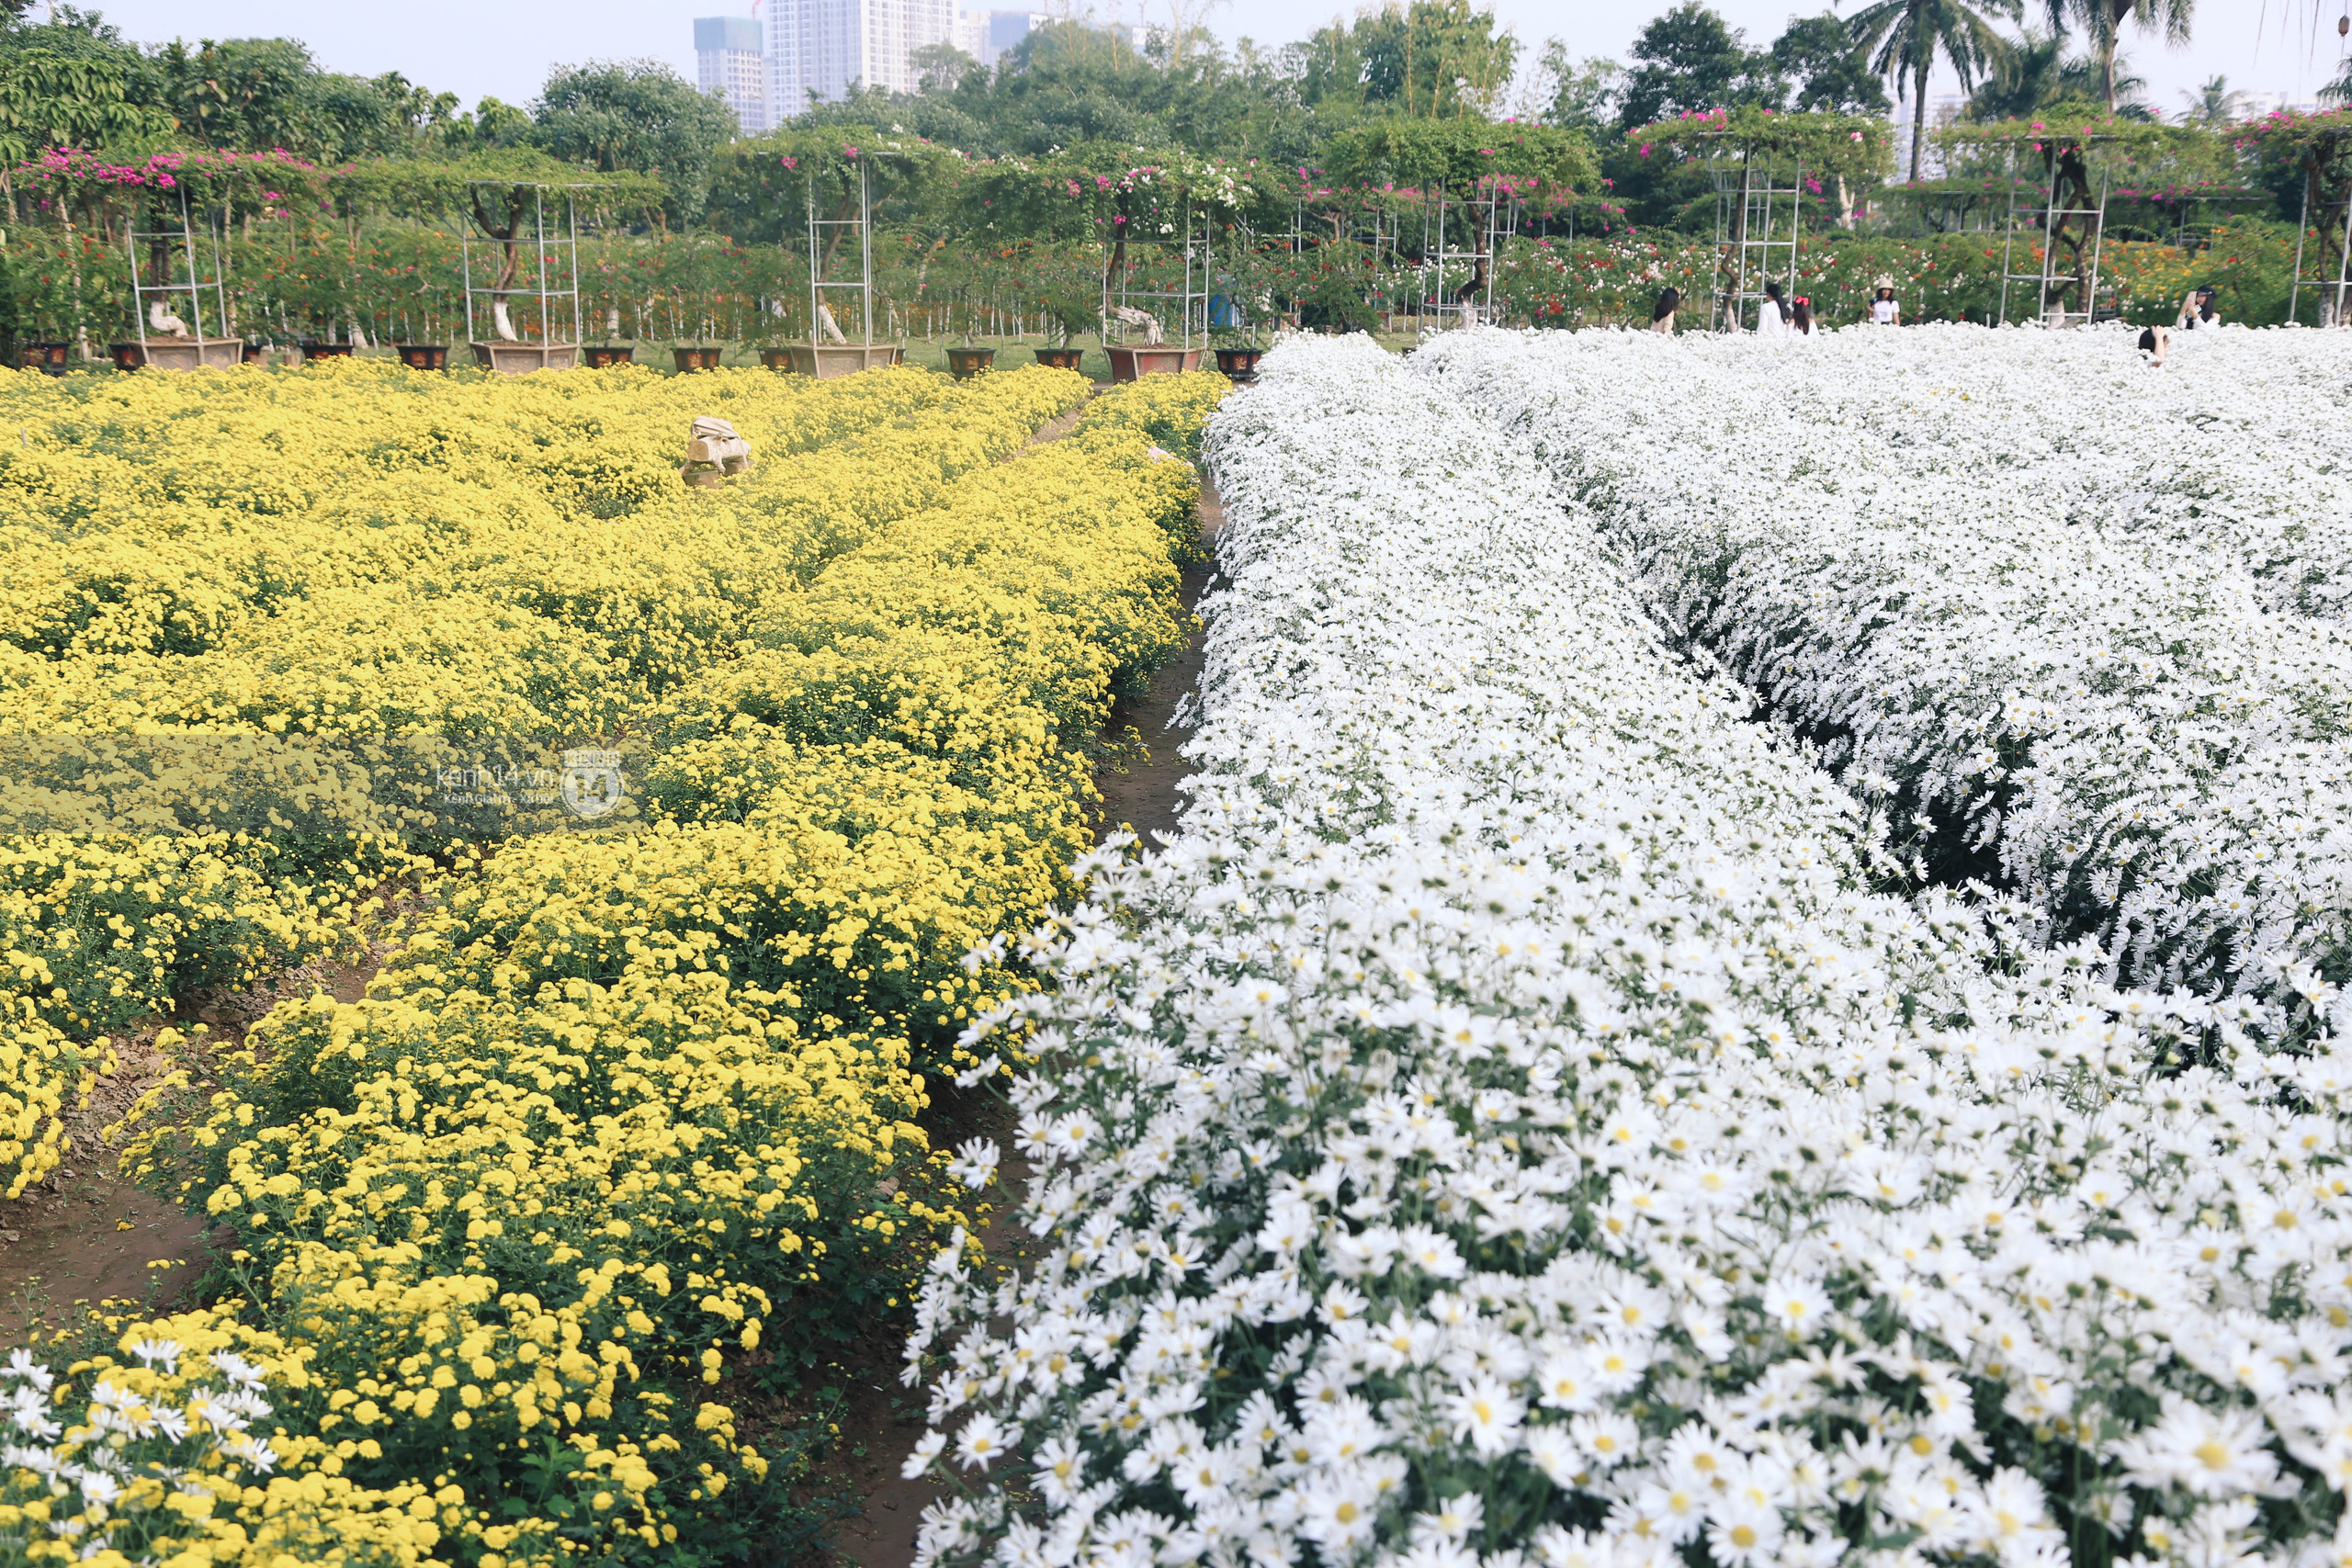 Trường ĐH rộng gần 200ha có vườn hoa đẹp nhất mùa đông Hà Nội, nhiều góc sống ảo cực chill chỉ với 25K - Ảnh 1.